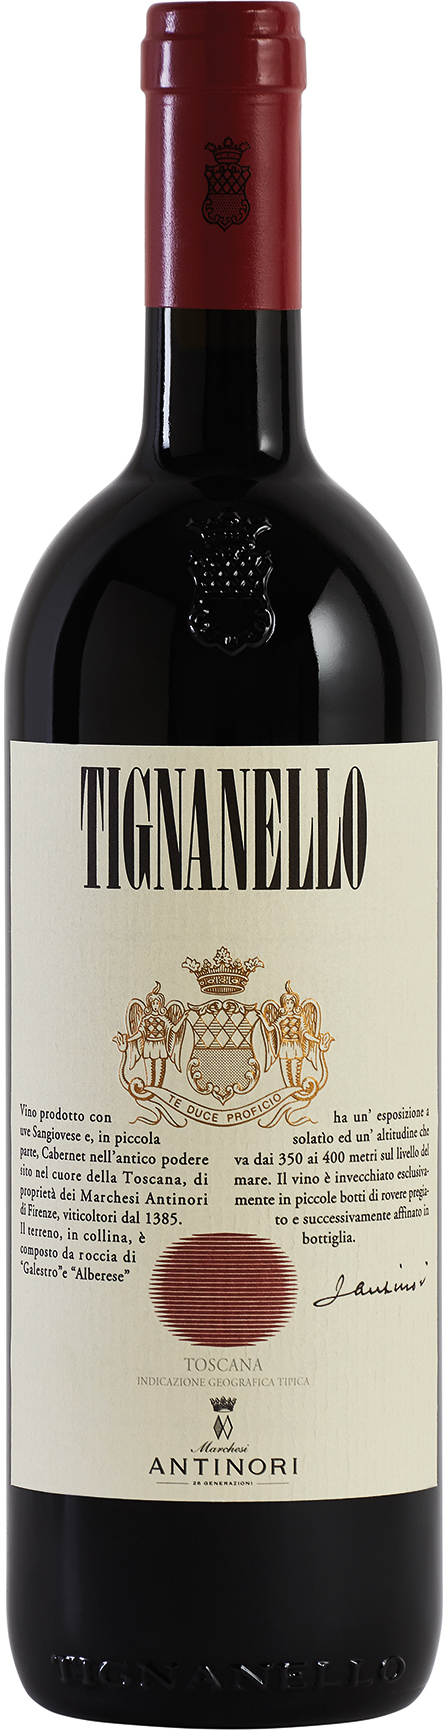 IGT kaufen Tignanello 2020 Antinori Shop Wein |